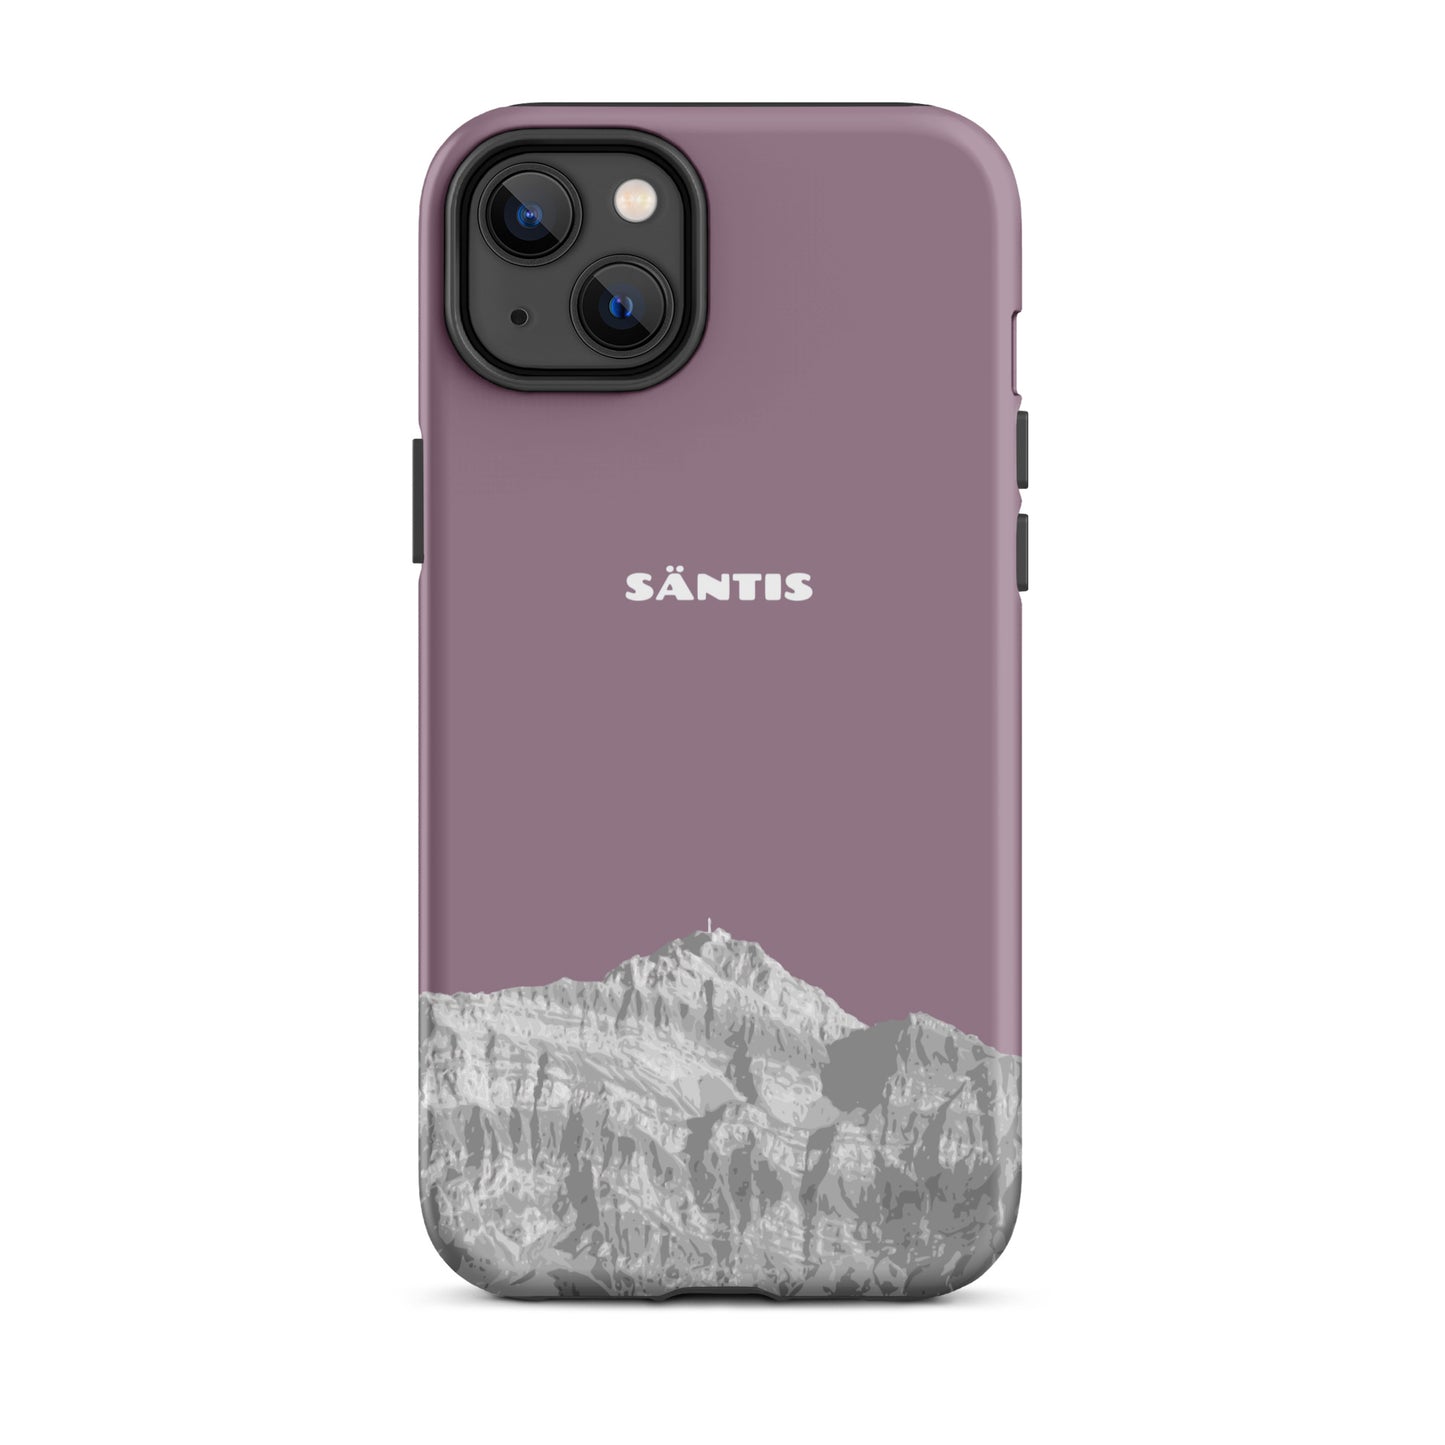 Hülle für das iPhone 14 Plus von Apple in der Farbe Pastellviolett, dass den Säntis im Alpstein zeigt.